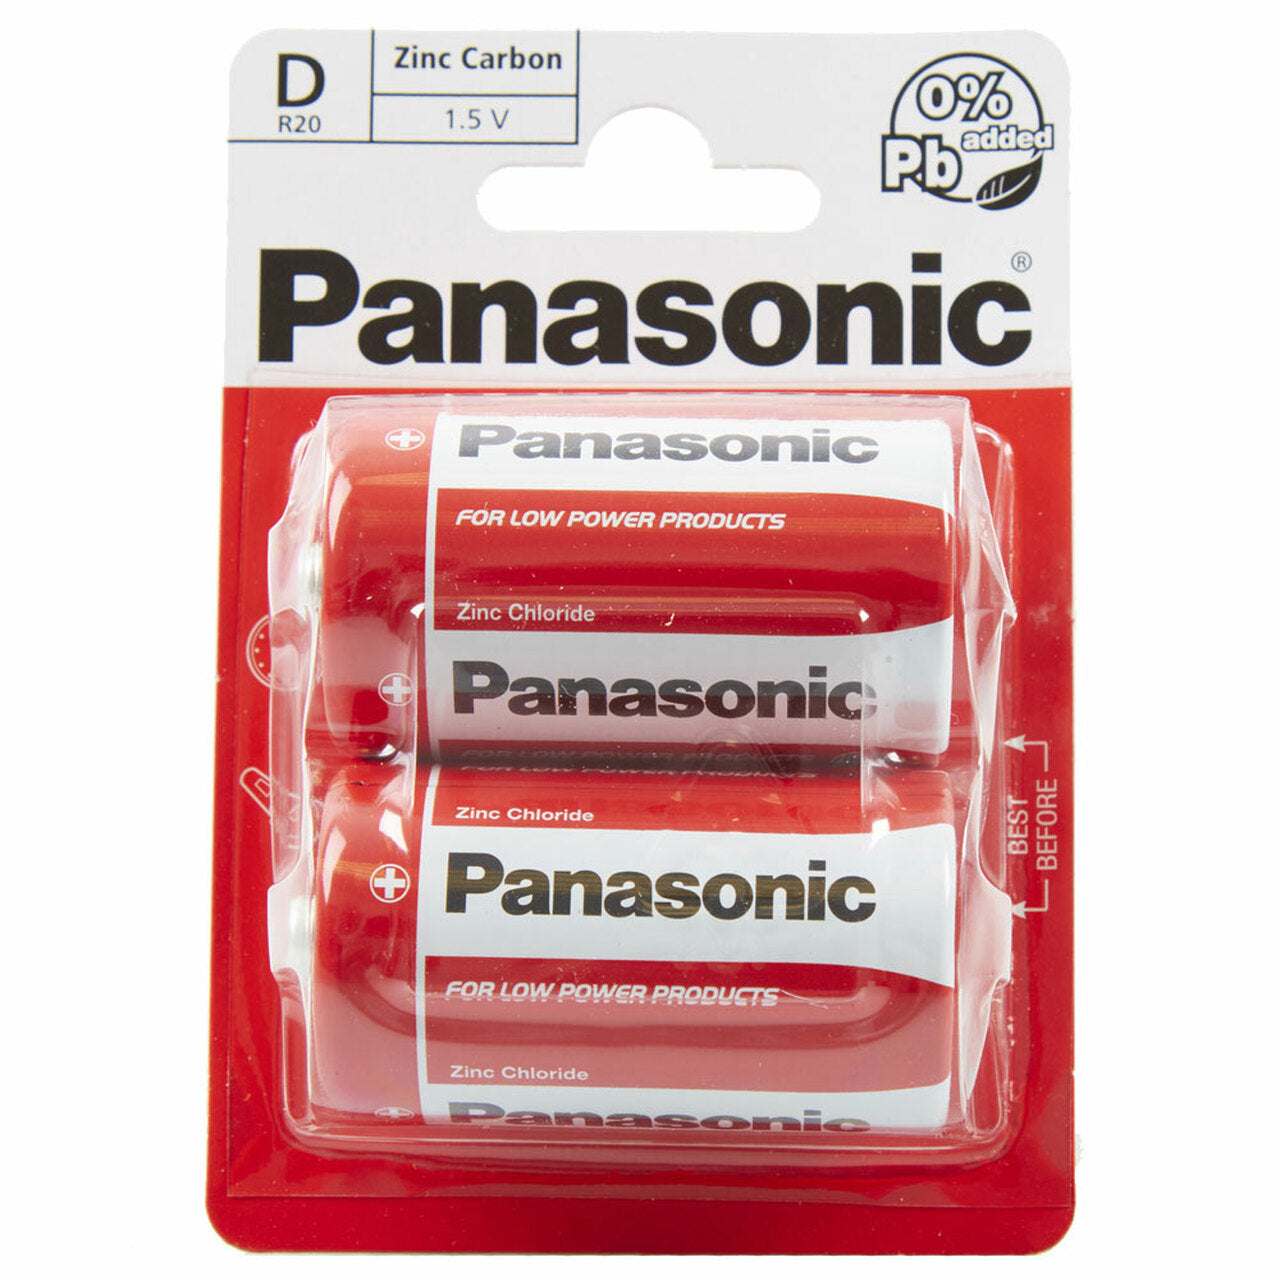 Panasonic D R20 Zinc Carbon Batteries (24pcs)